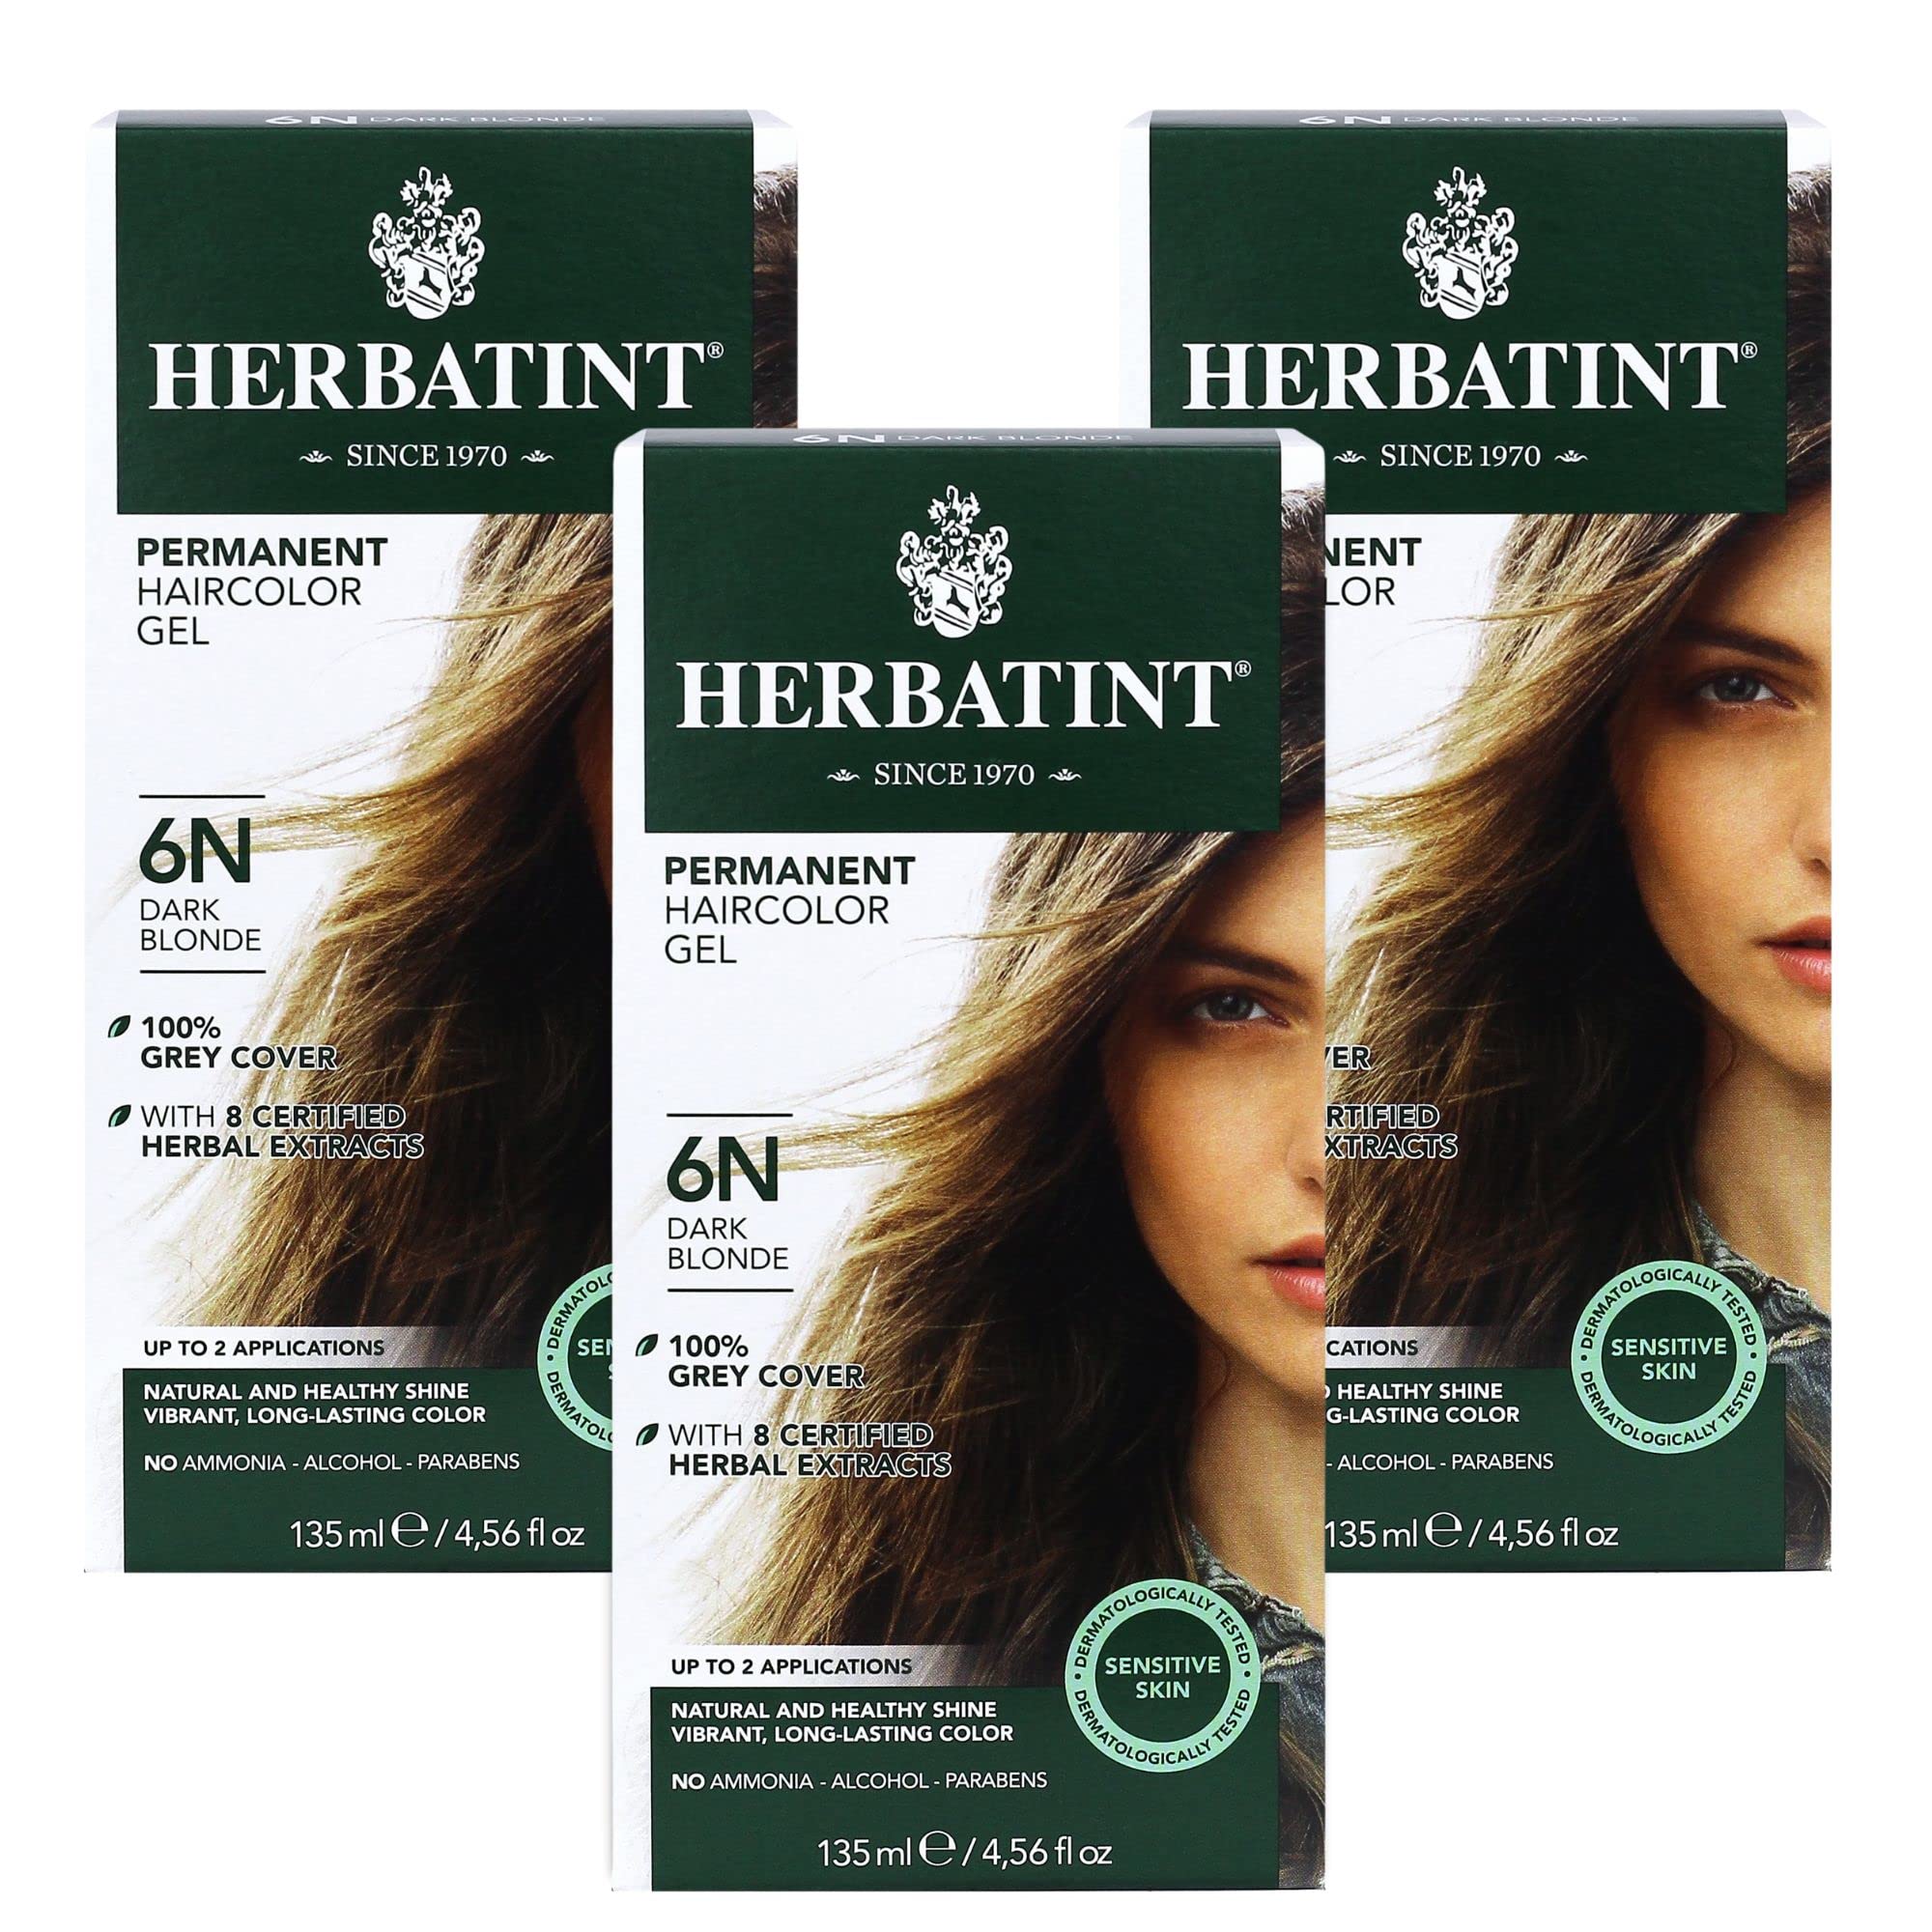 Herbatint Permanent Haircolor Gel, 6N Dark Blonde, Alcohol Free, Vegan, 100% Grey Coverage - 4.56 oz (3 Pack)